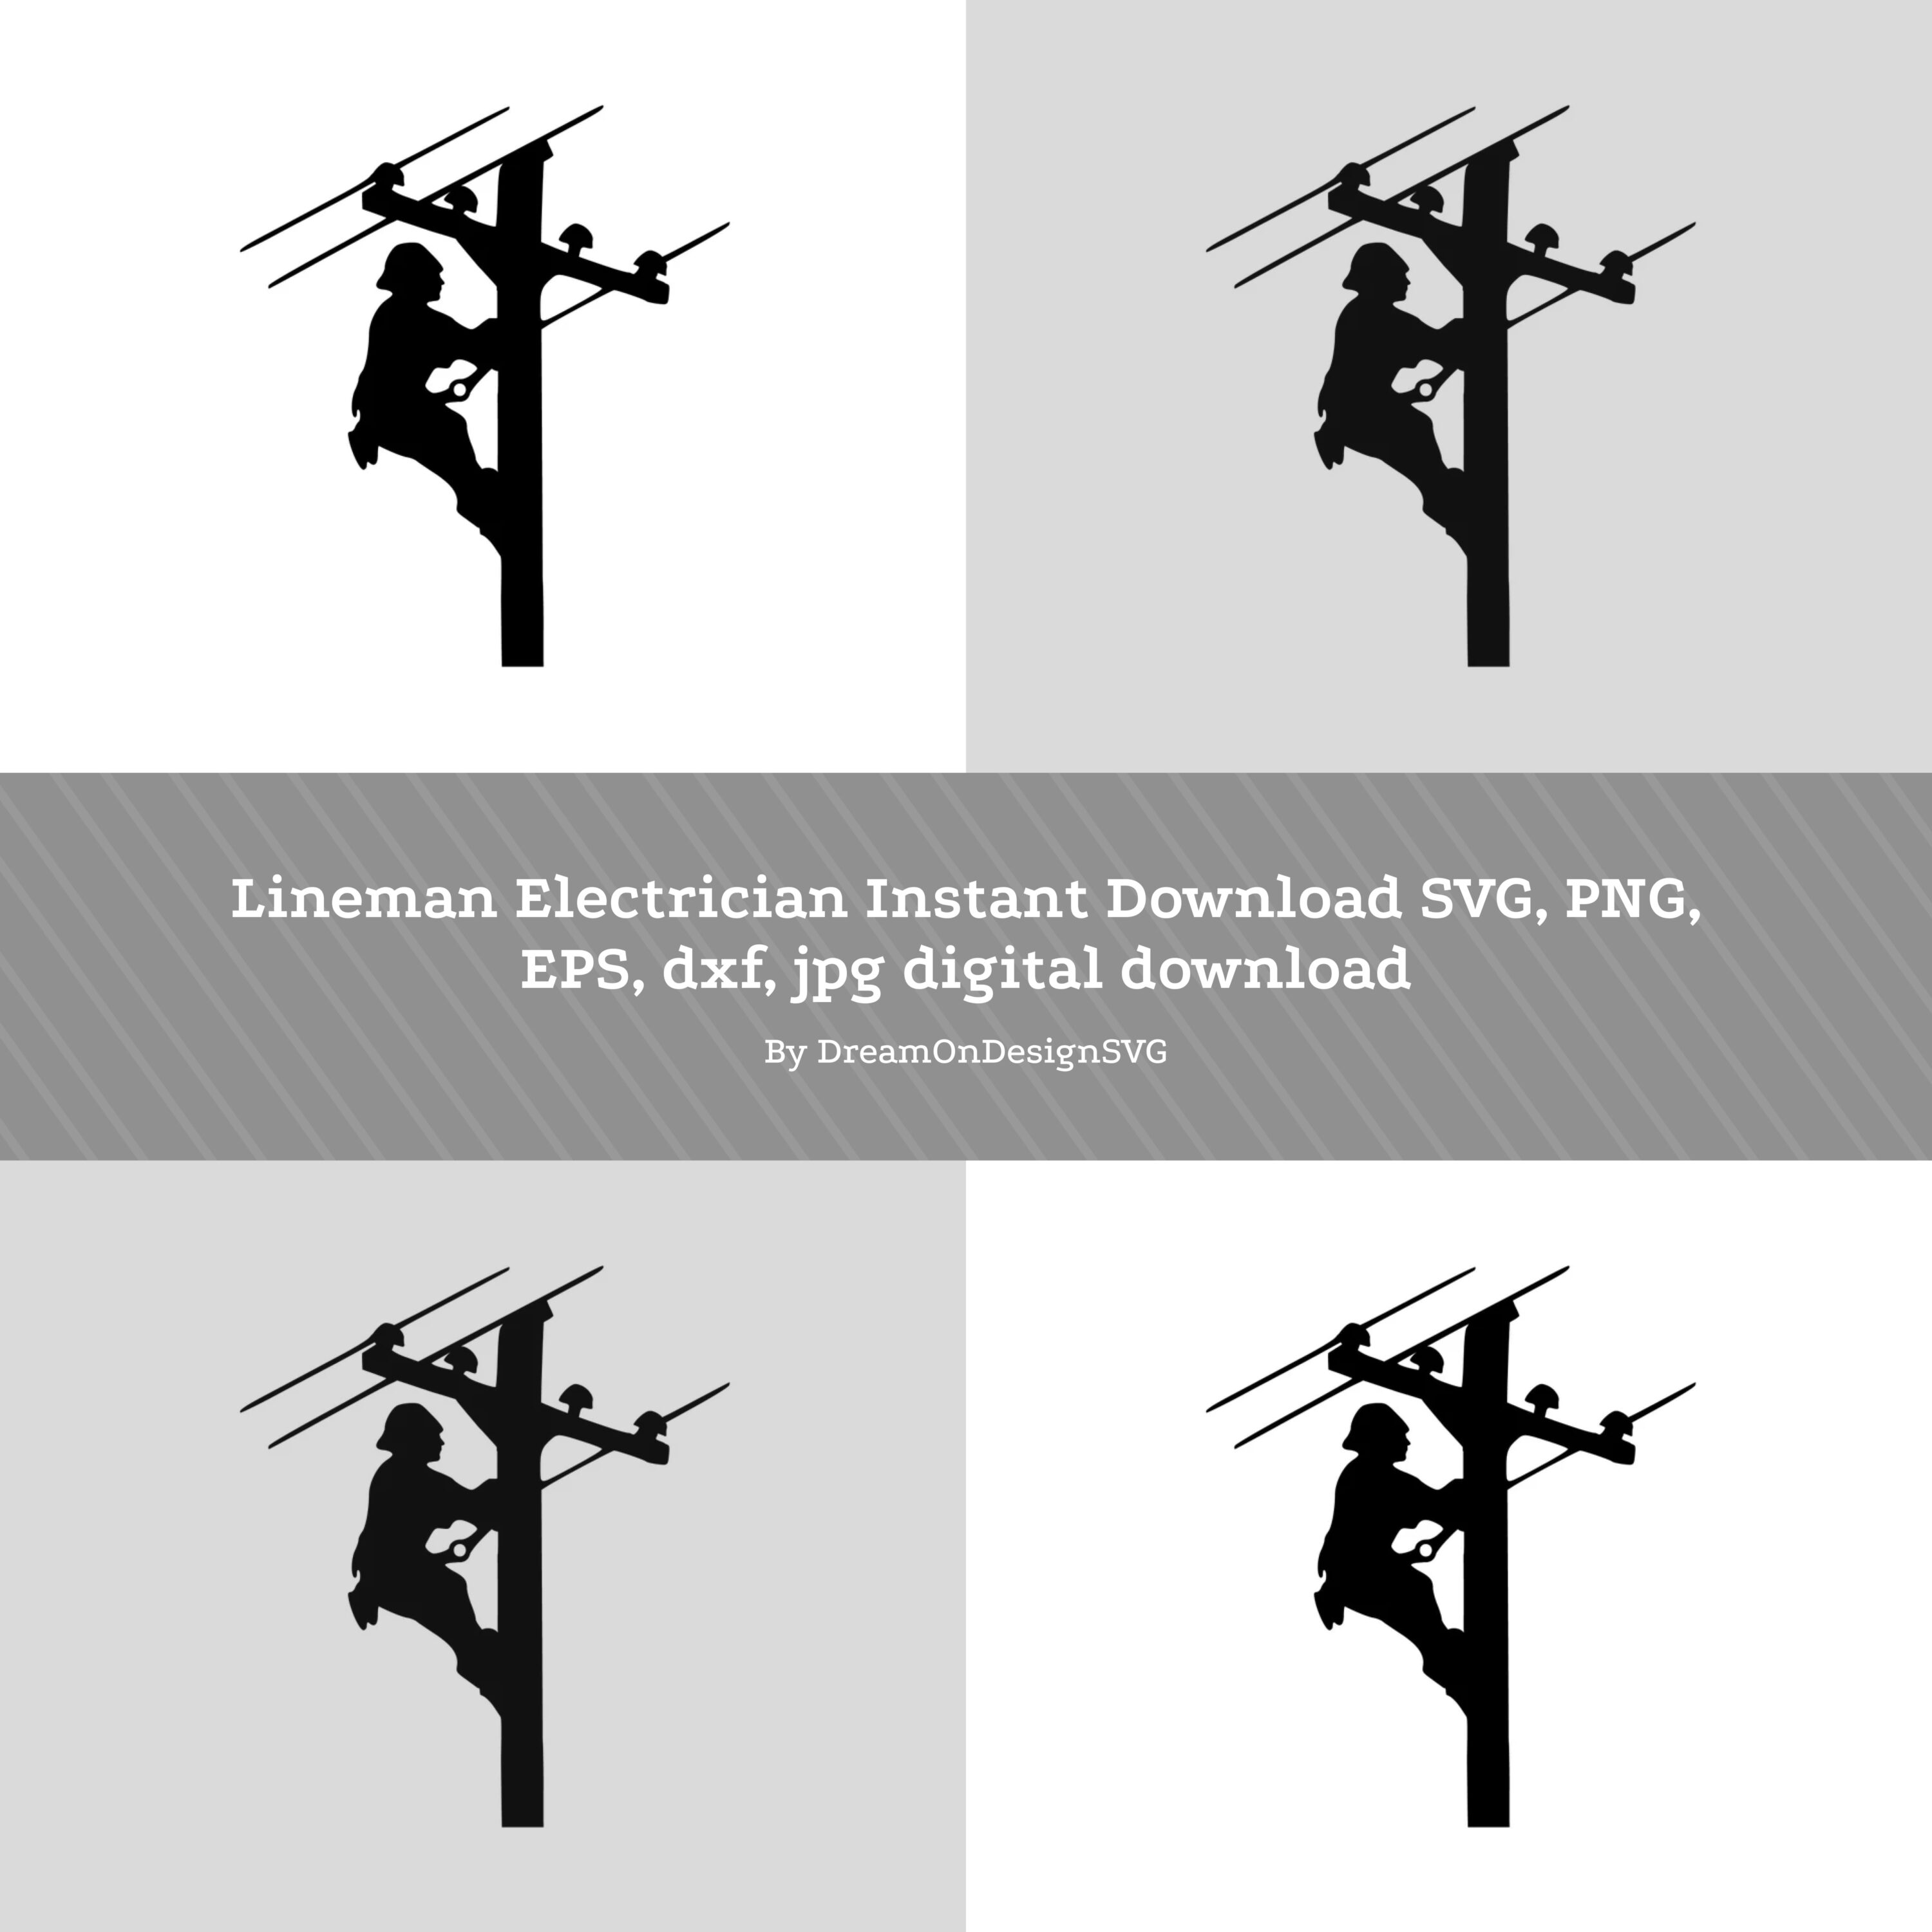 Lineman Electrician Instant Download SVG, PNG, EPS, dxf, jpg digital download.